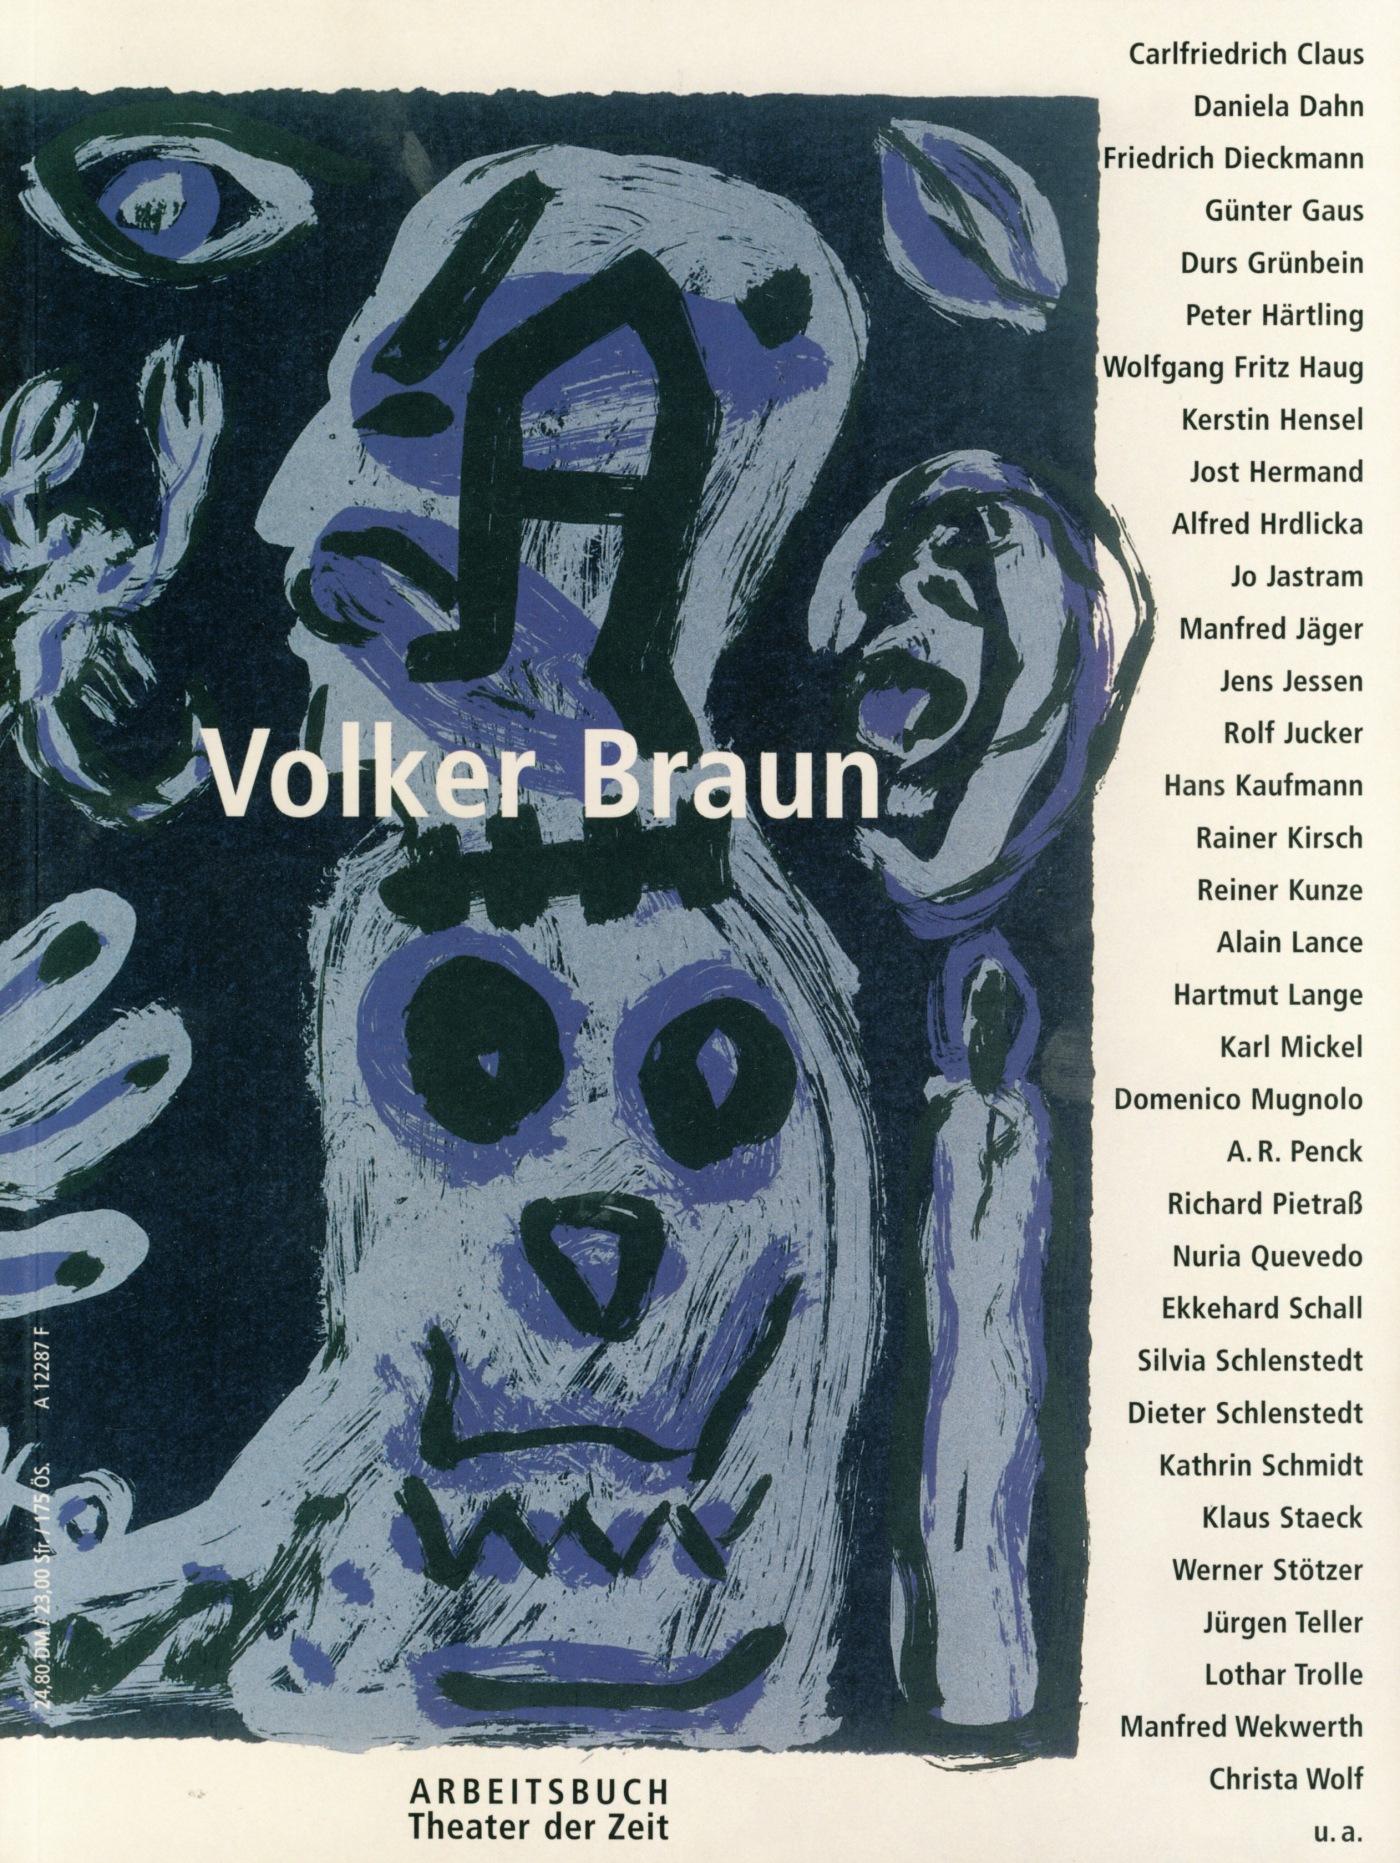 Arbeitsbuch 7 "Volker Braun"